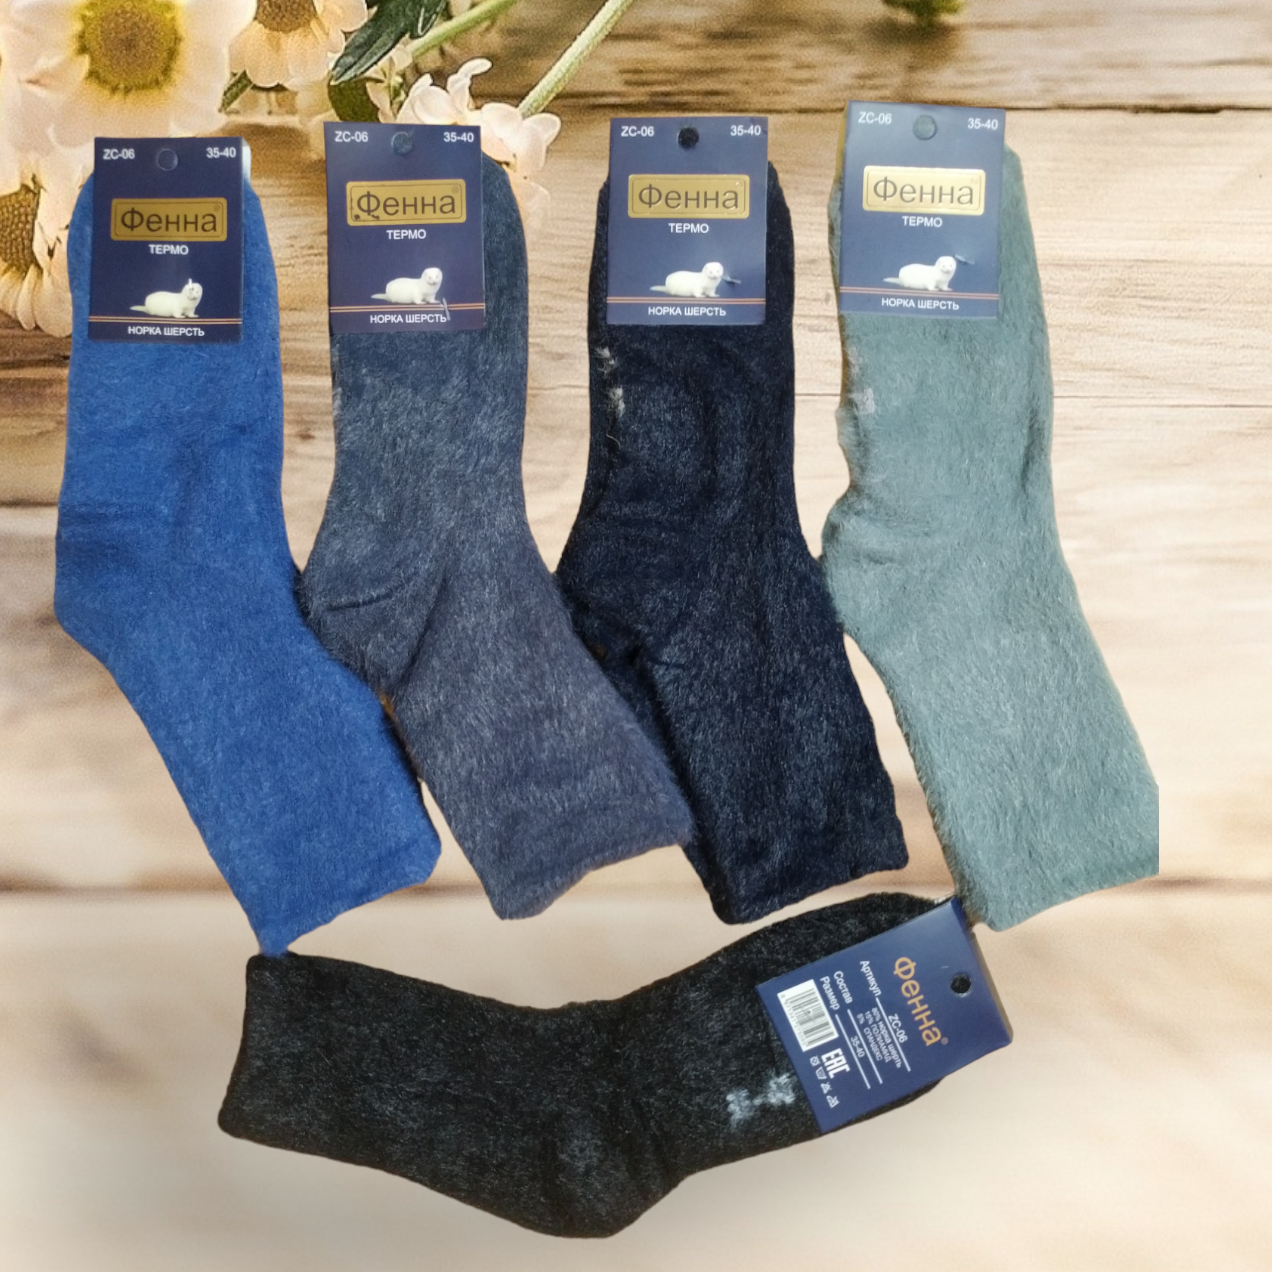 Шкарпетки теплі жіночі (норка) Розмір 35-40